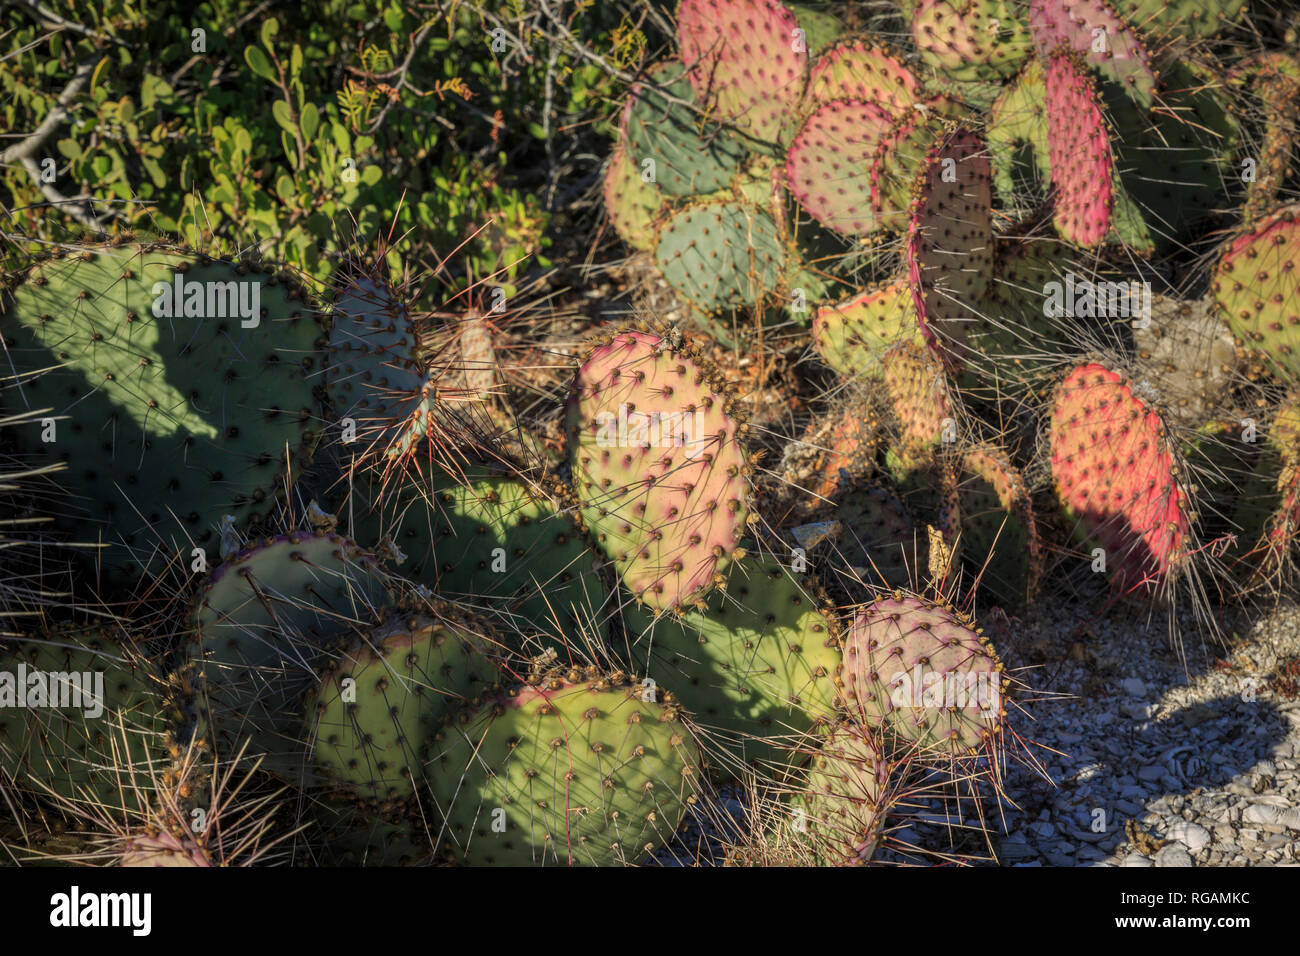 Auswahl an Farben und Größen der stachelige Boden Kaktus. Sonora Wüste im Nordwesten von Mexiko. Stockfoto